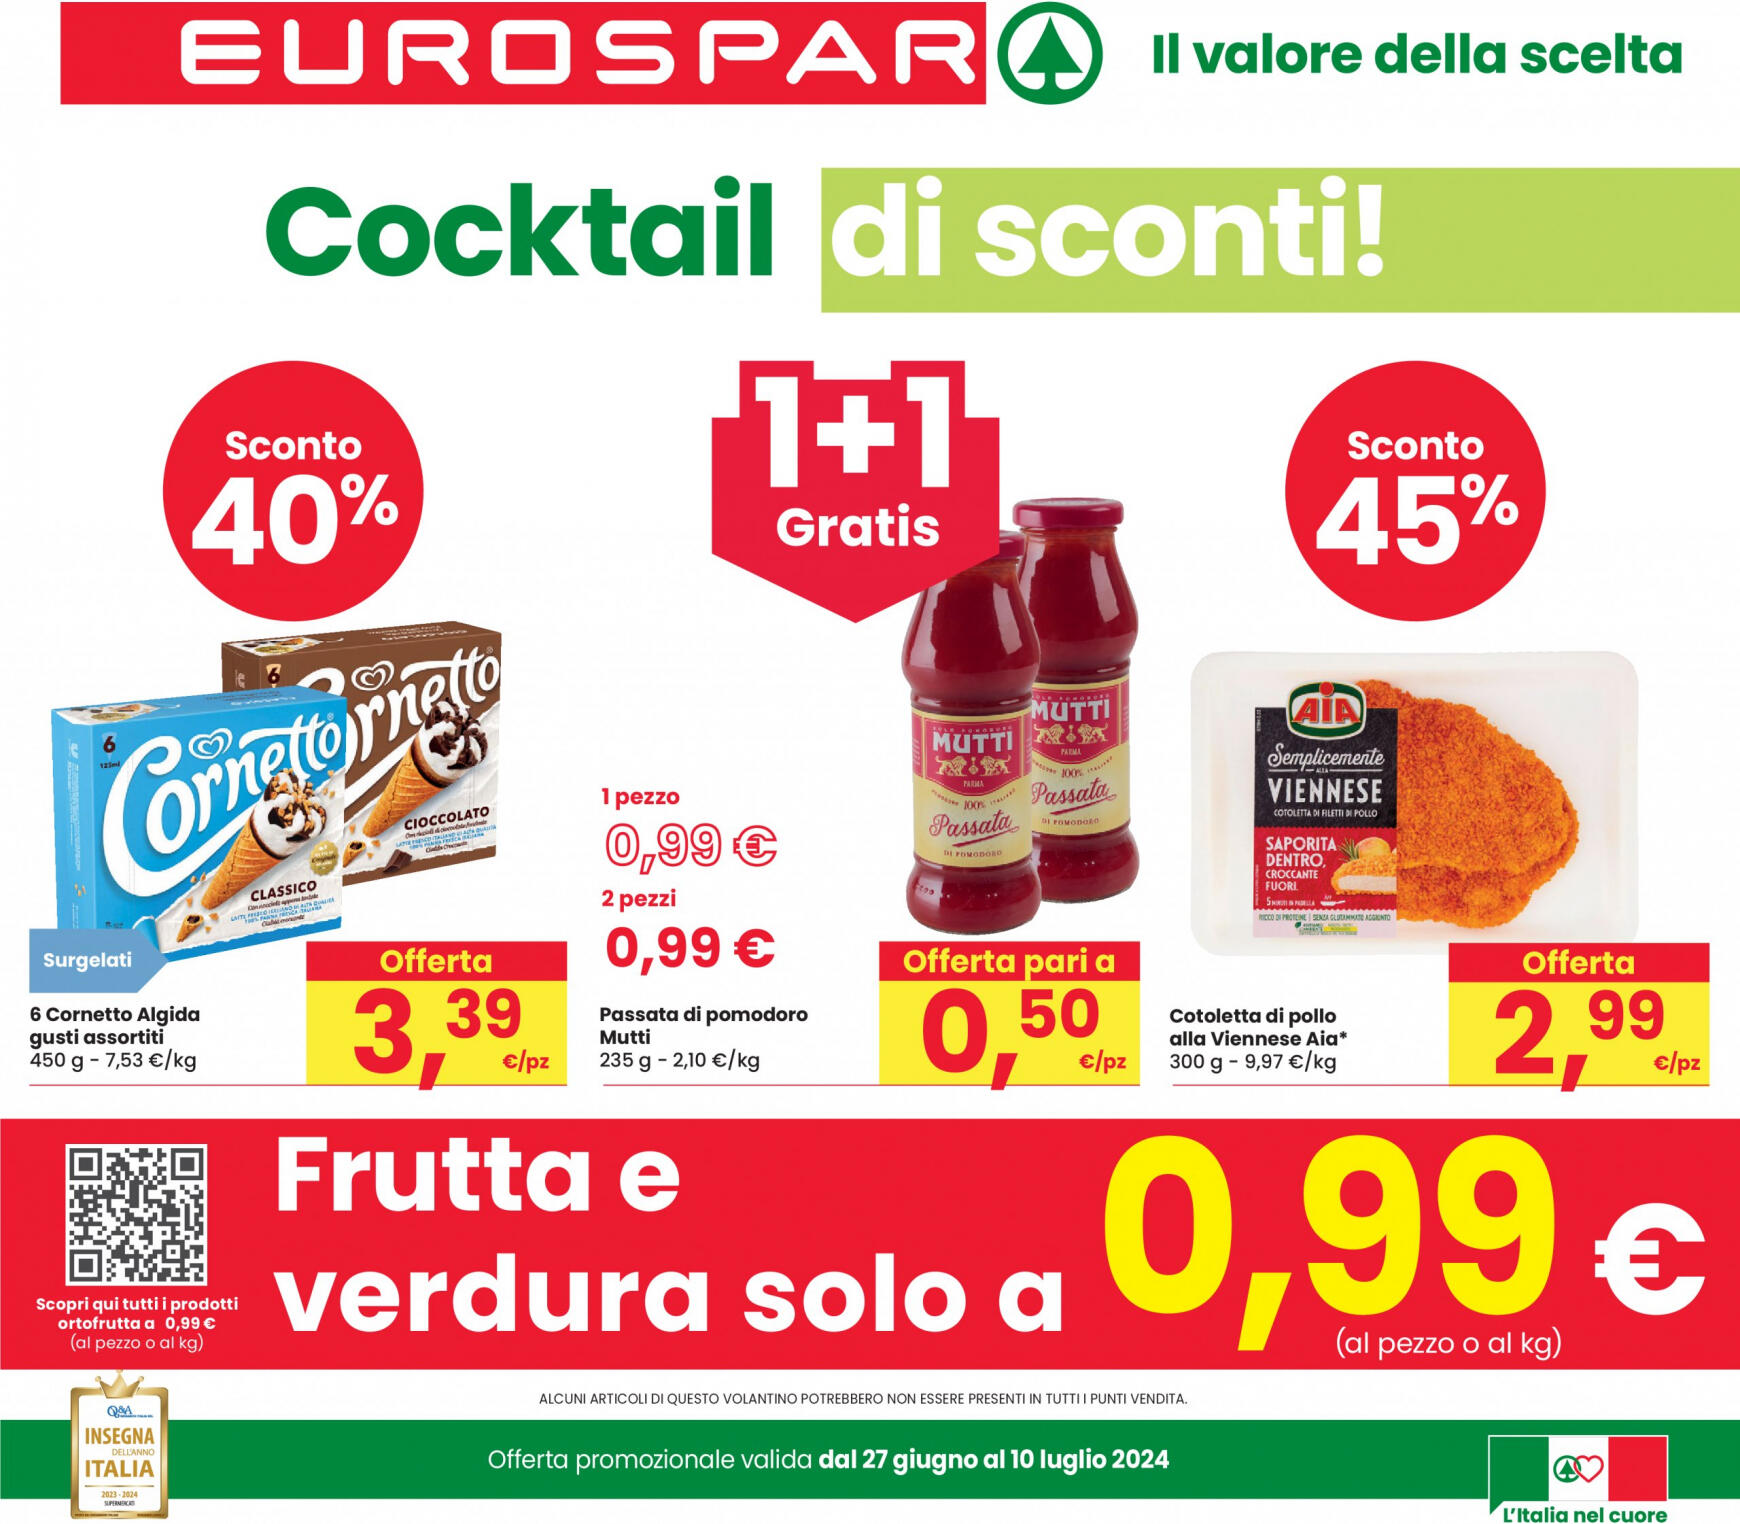 eurospar - Nuovo volantino Eurospar 27.06. - 10.07.